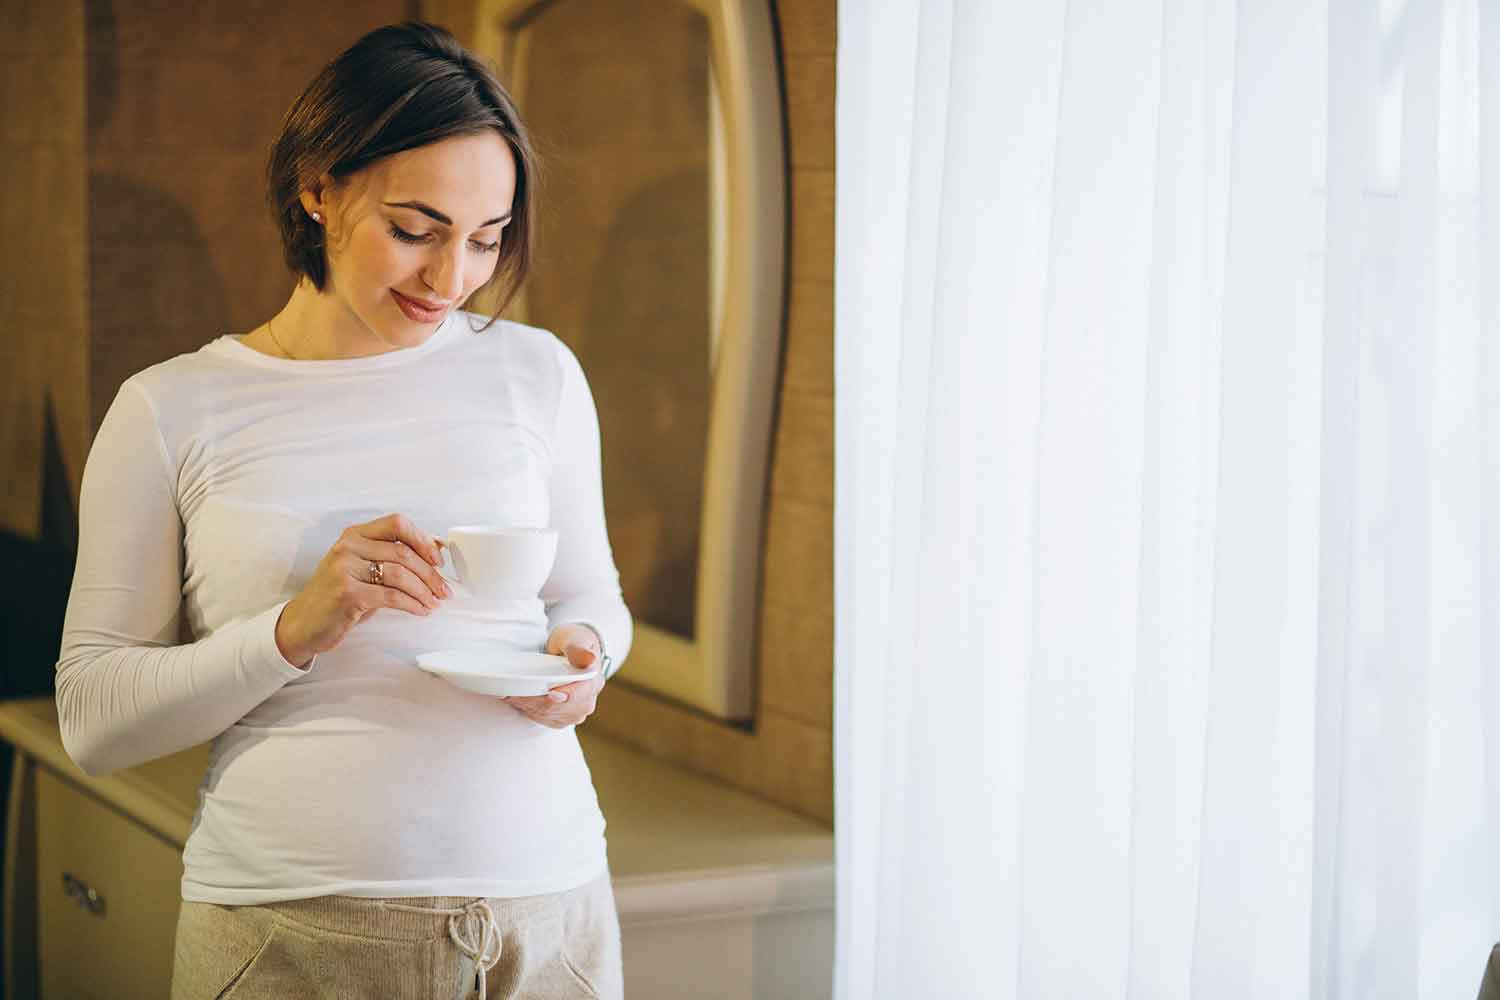  خوردن دوغ در بارداری | مزایا و موارد مهم